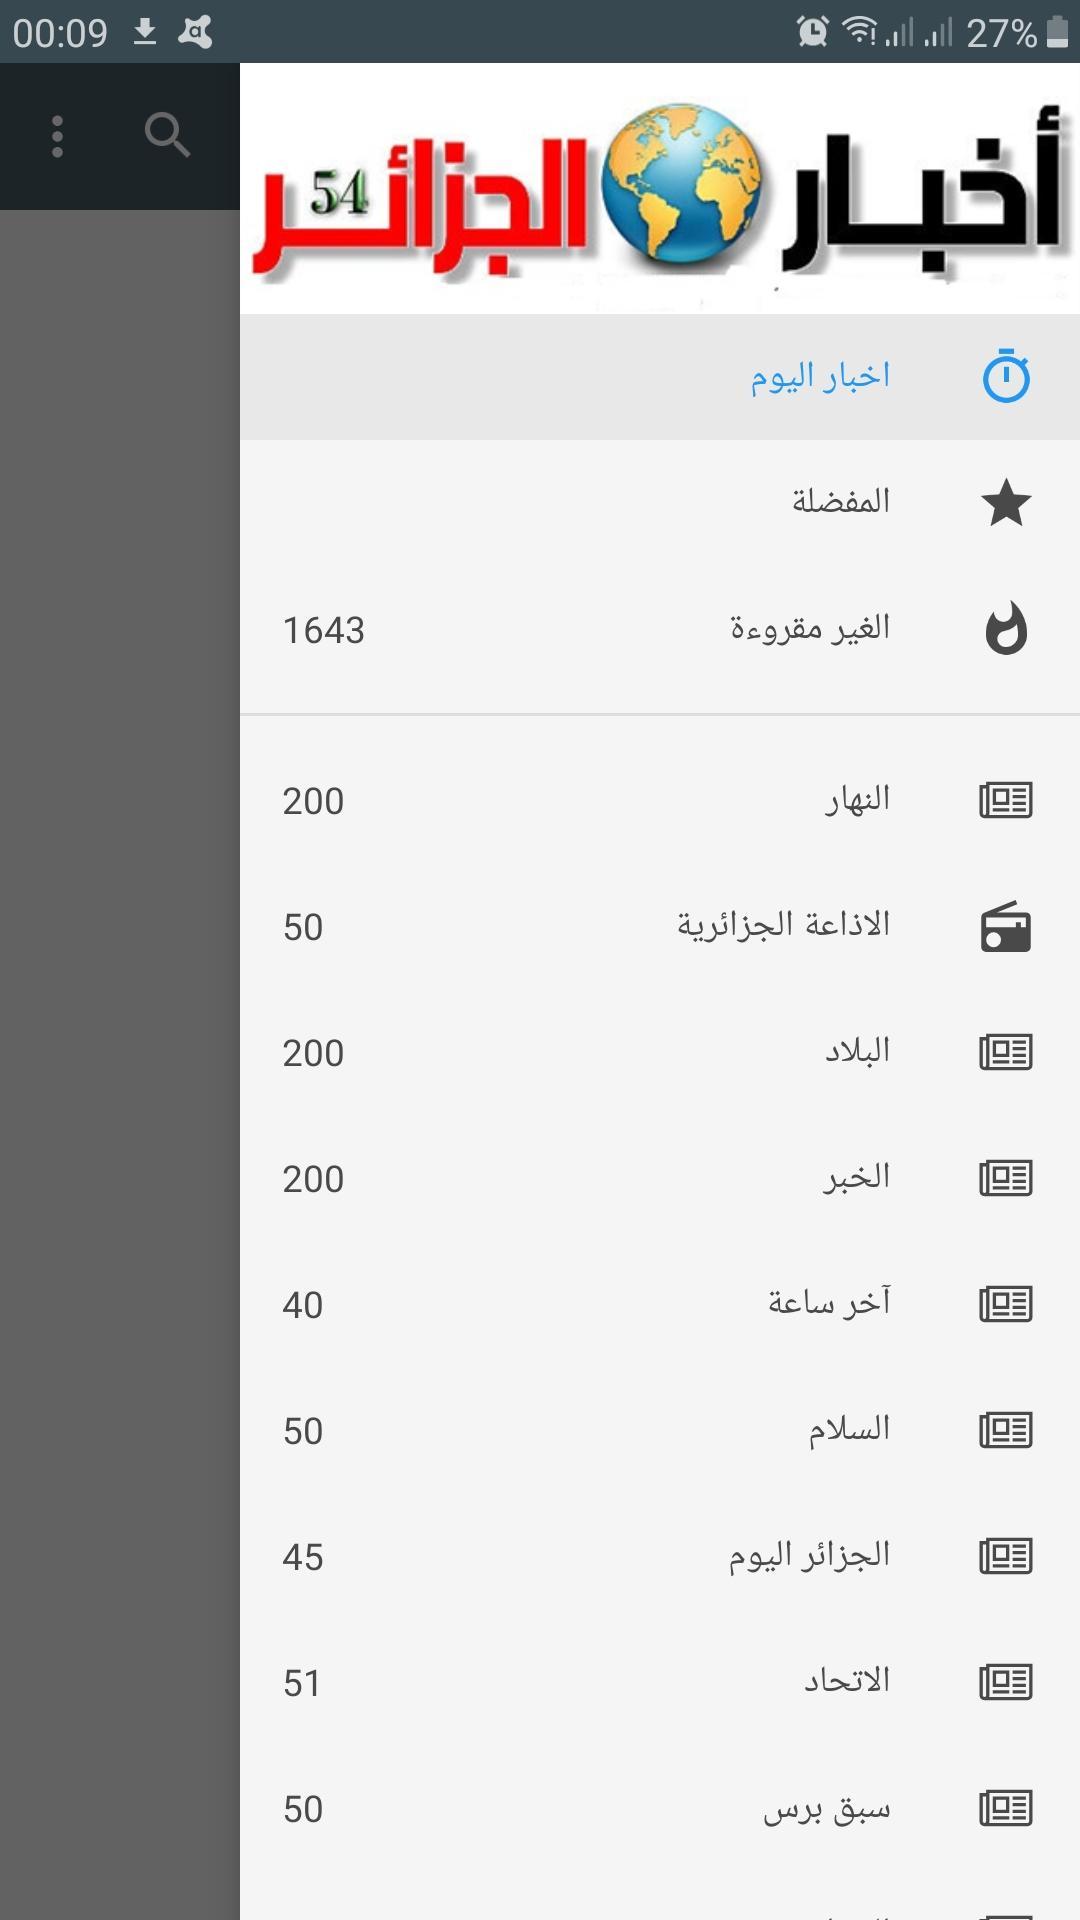 اخر اخبار الجزائر العاجلة لنهار اليوم für Android - APK herunterladen